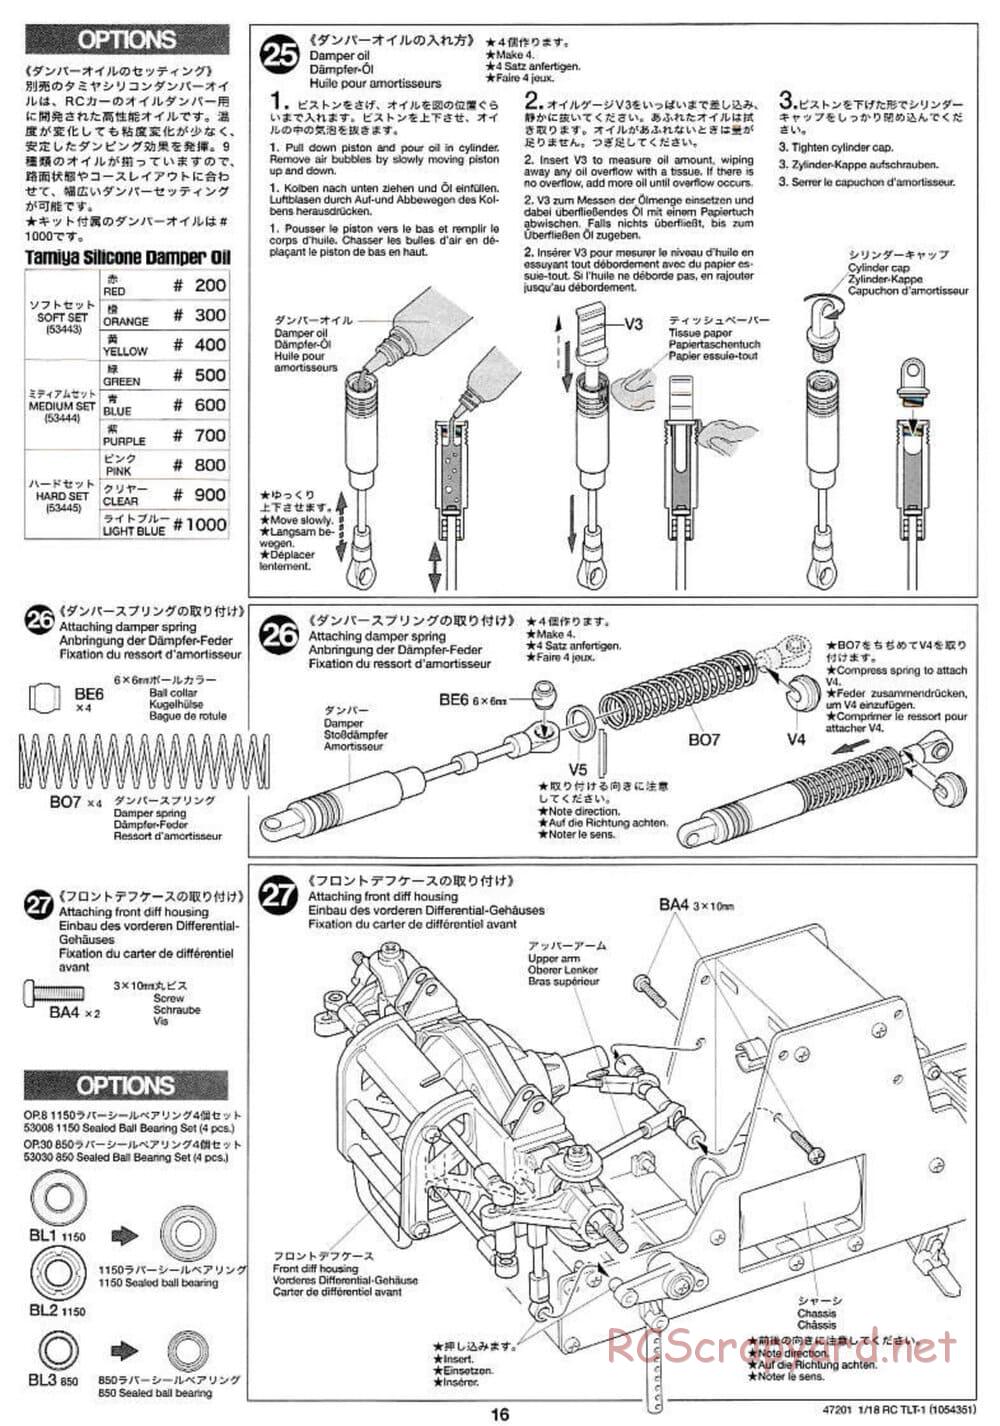 Tamiya - Rock Buster - TLT-1 Chassis - Manual - Page 16